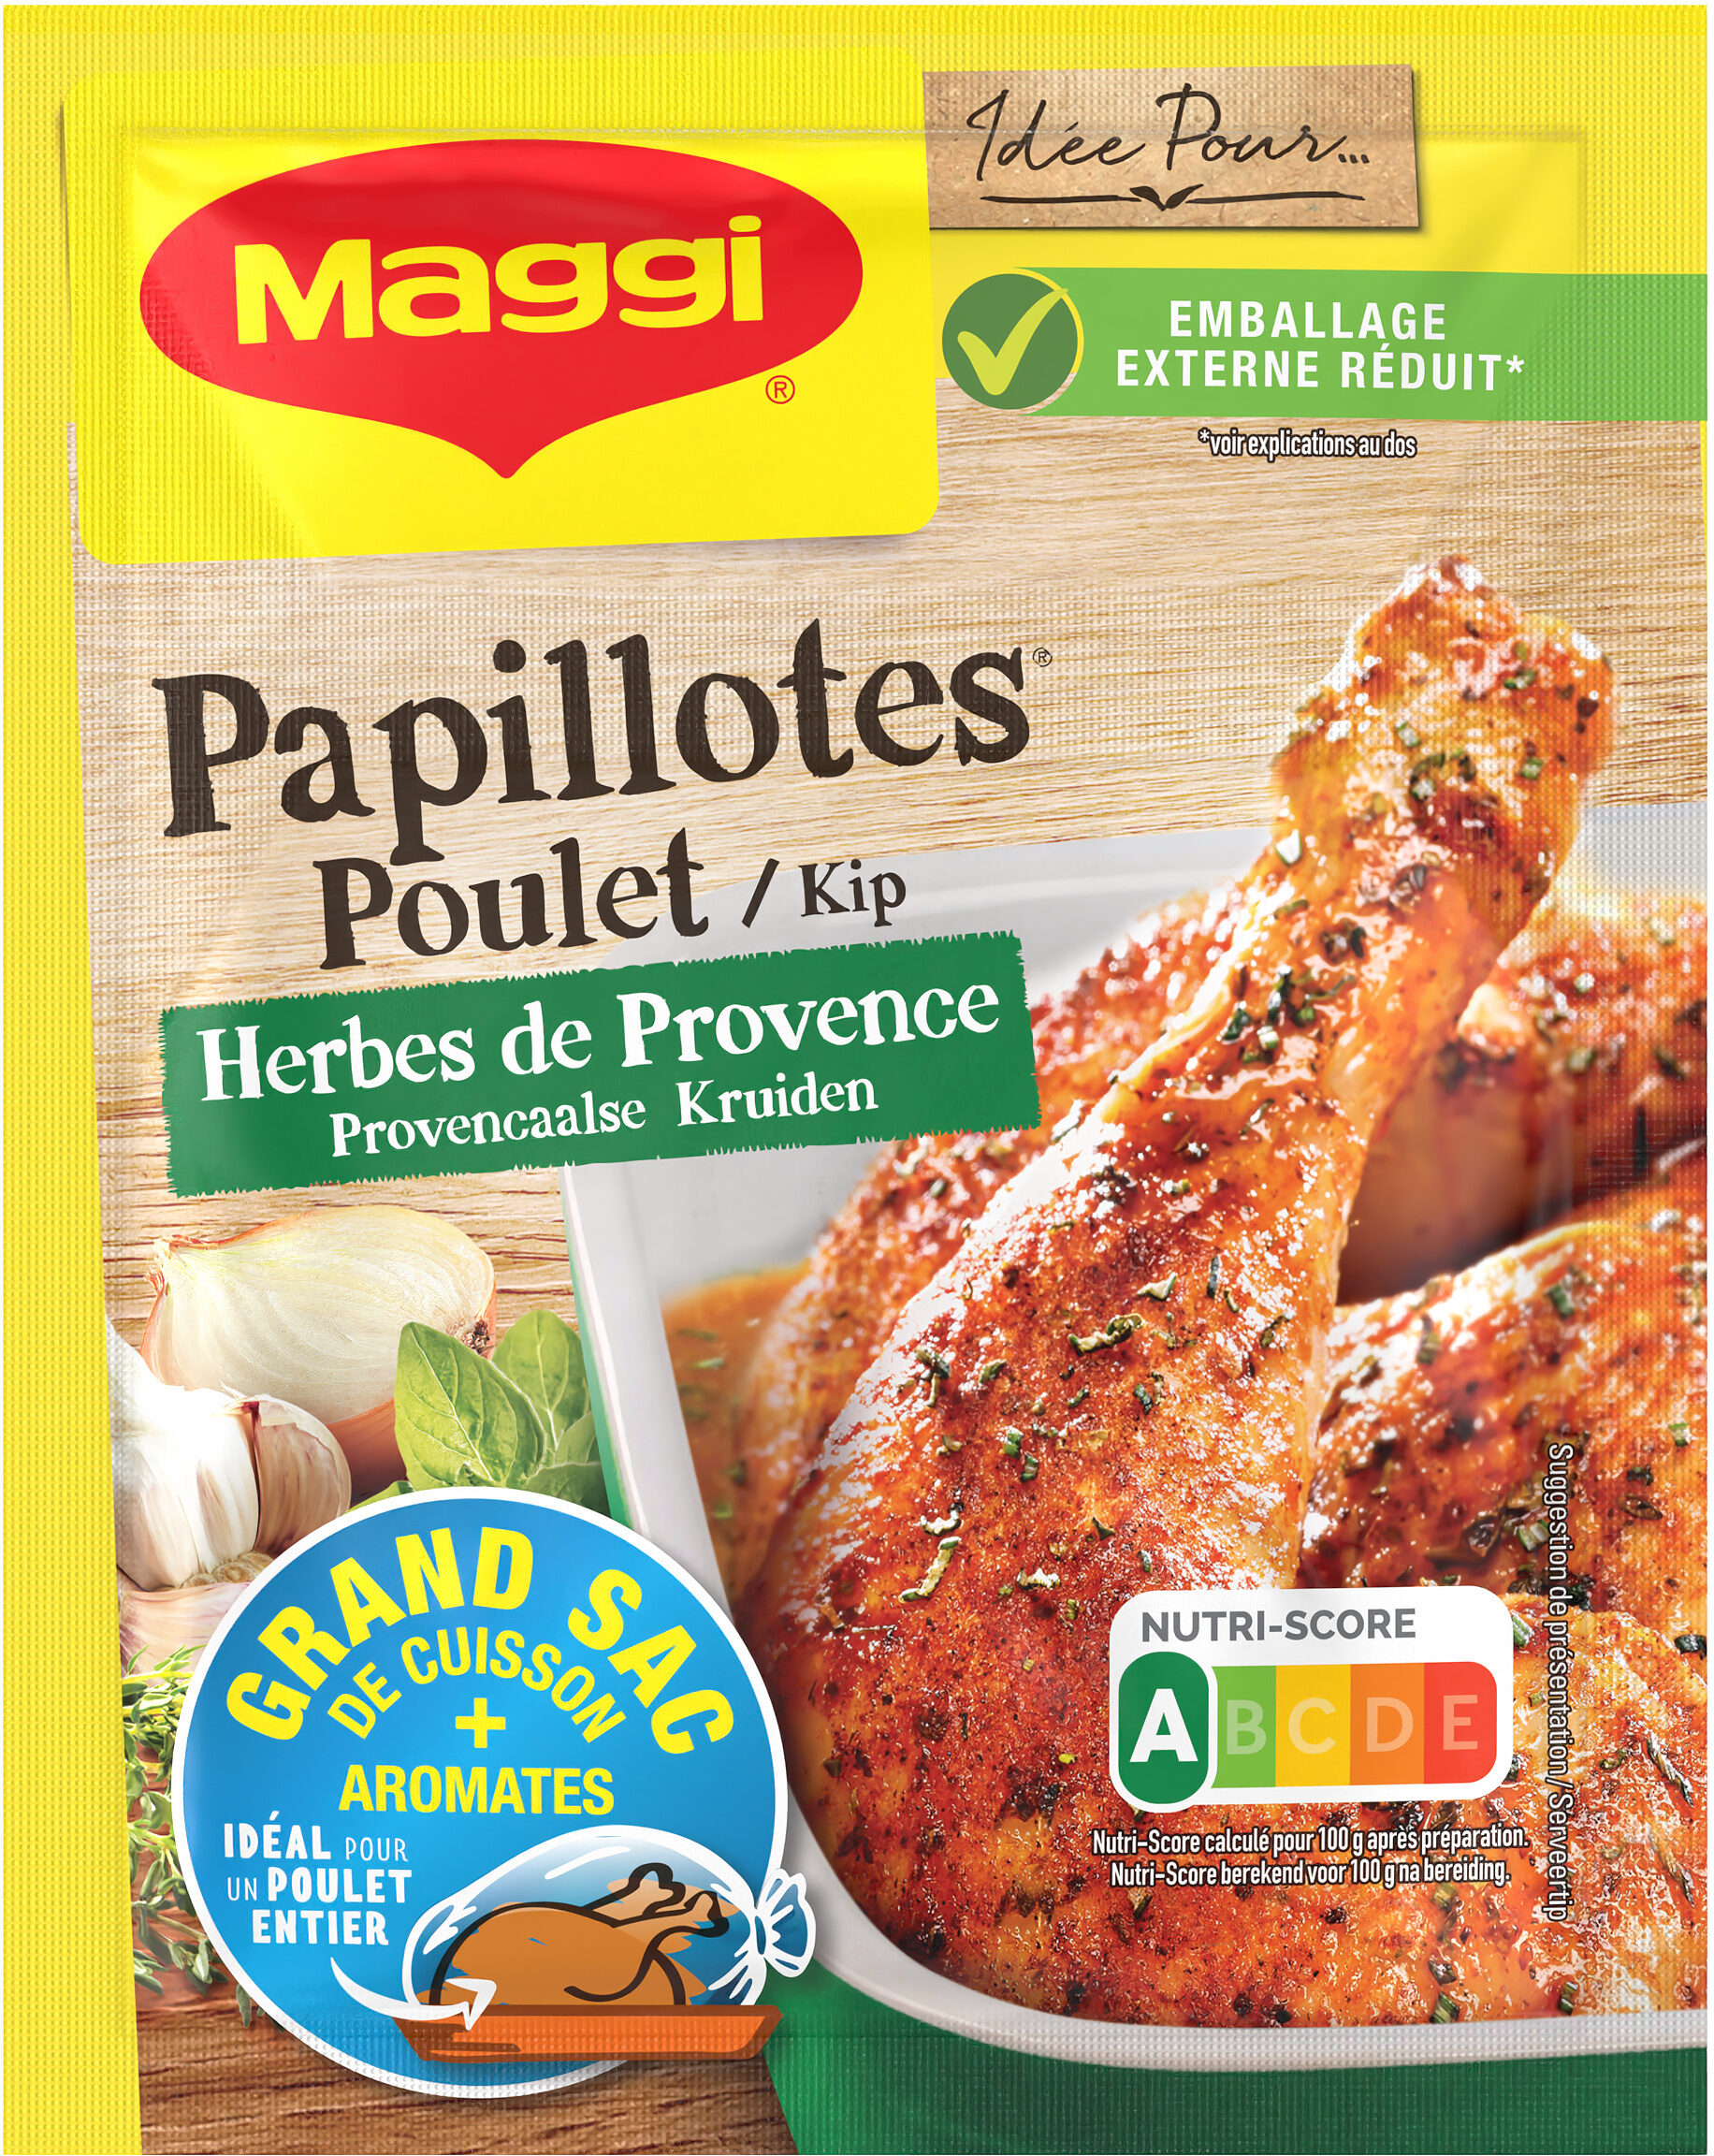 MAGGI Papillotes pour poulet herbes de Provence - Product - fr